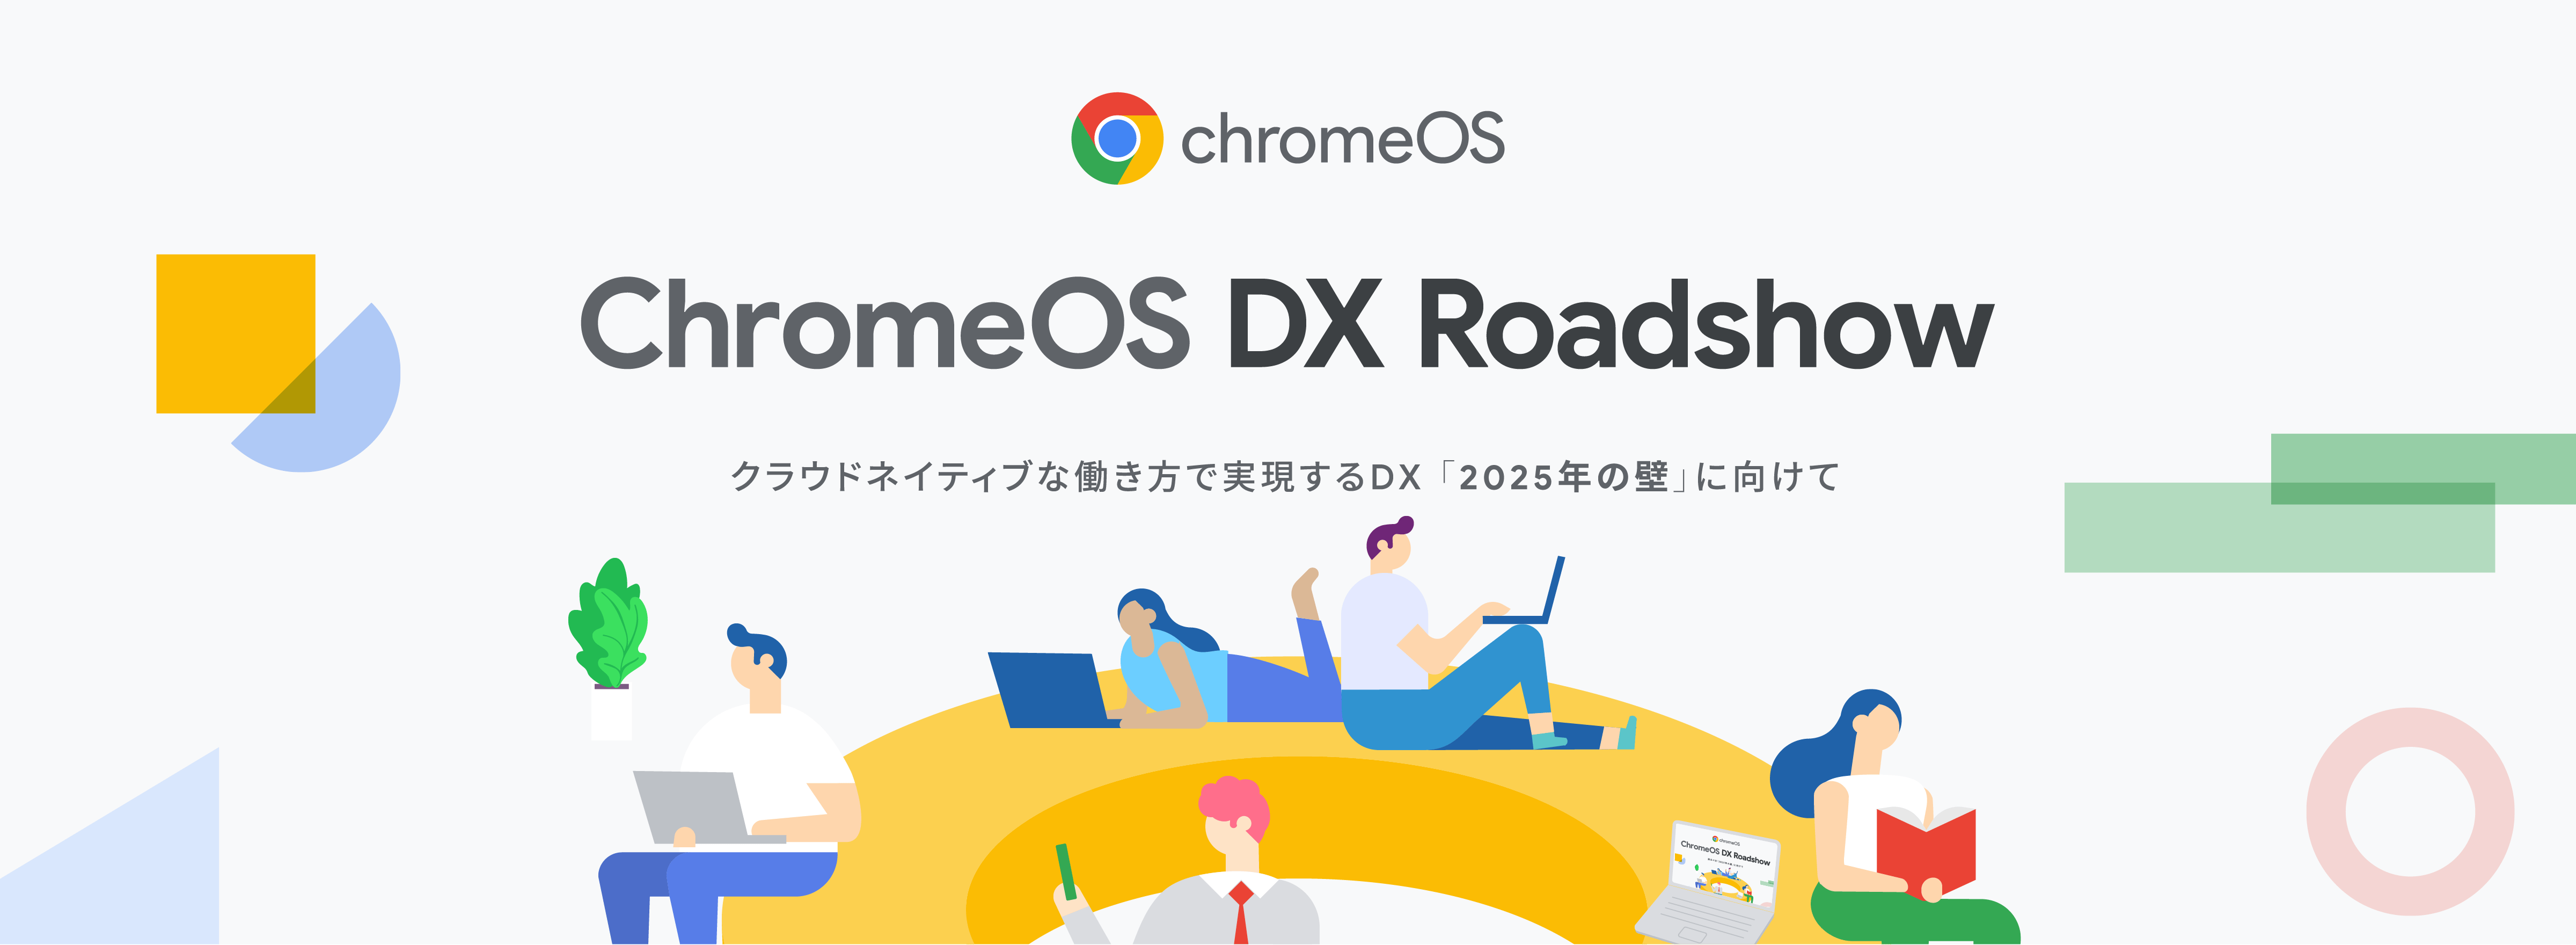 [chomeOS] ChromeOS DX Roadshow